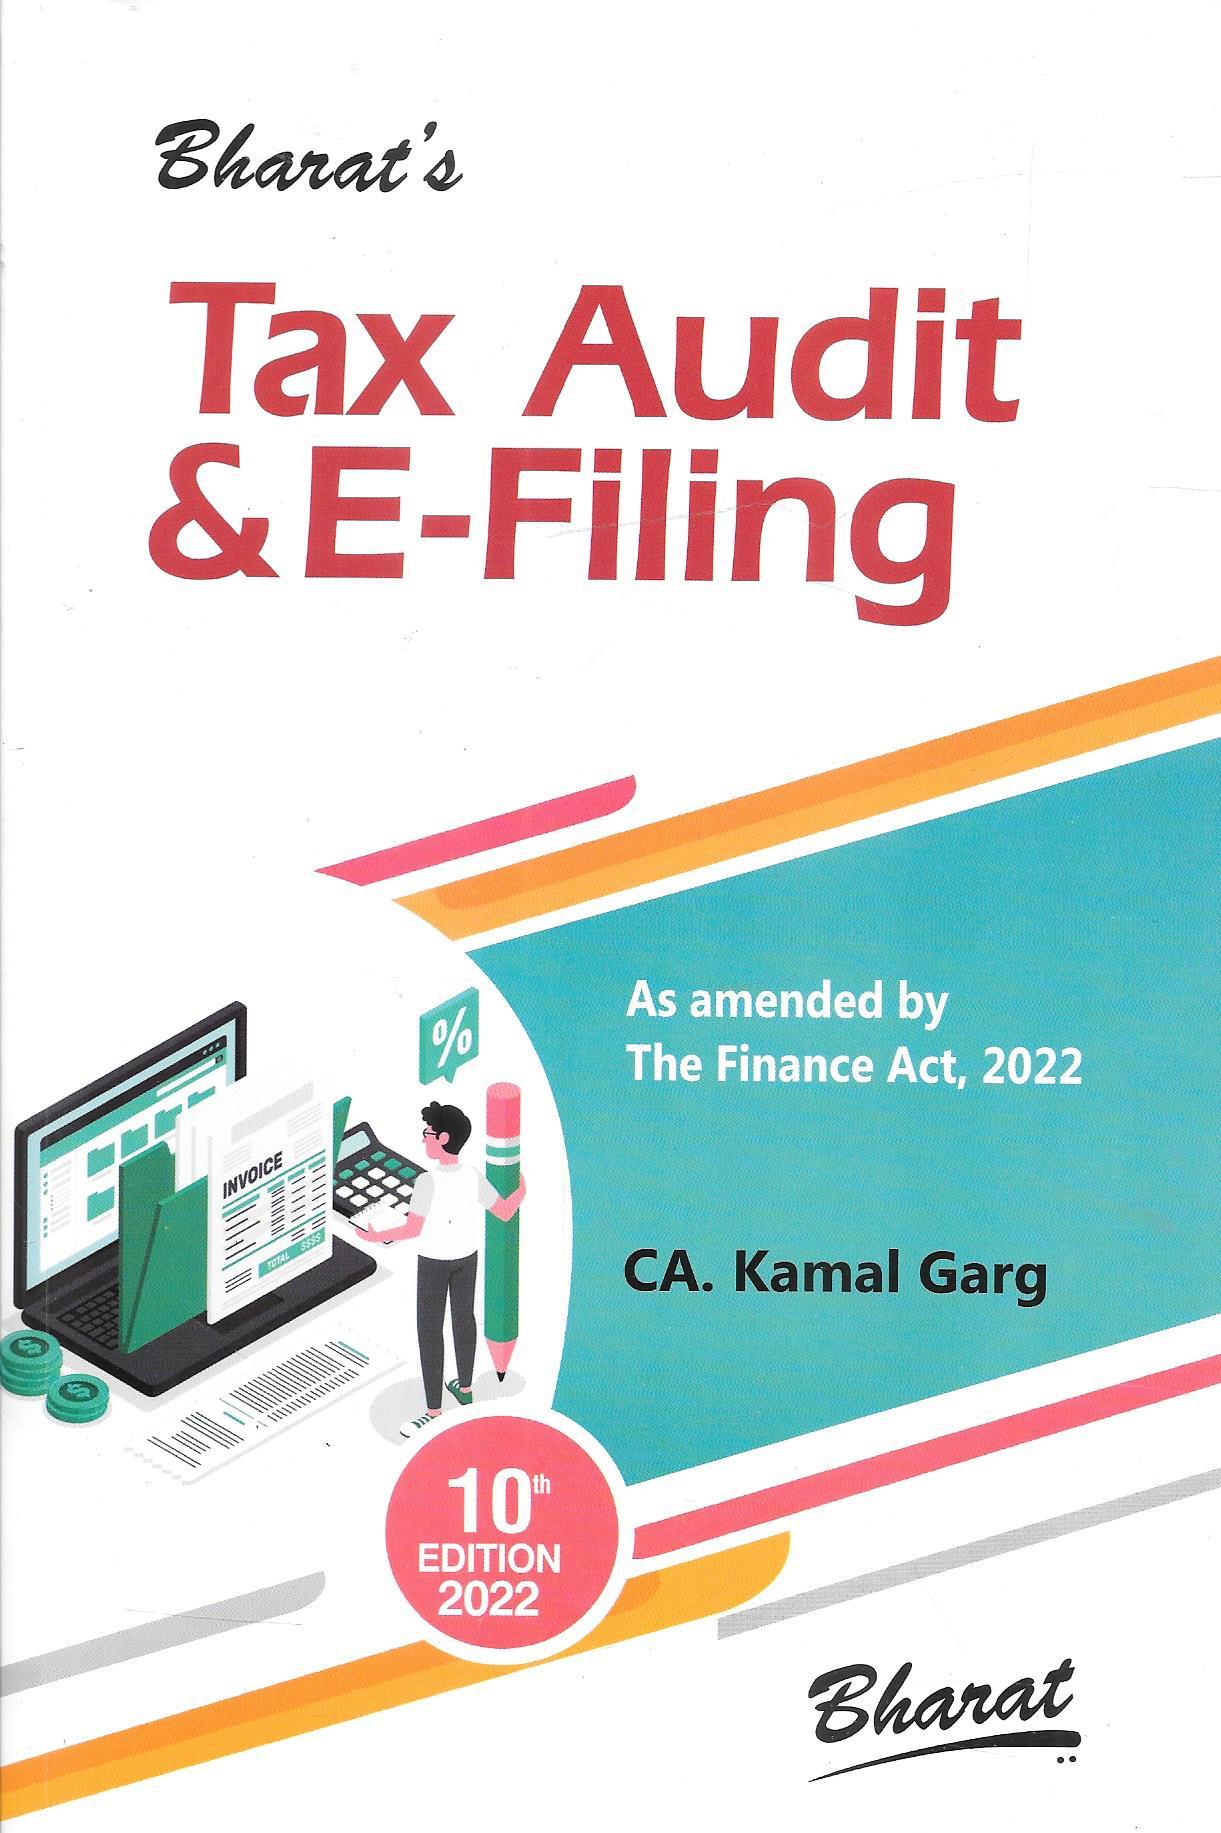 Tax Audit & E-Filing